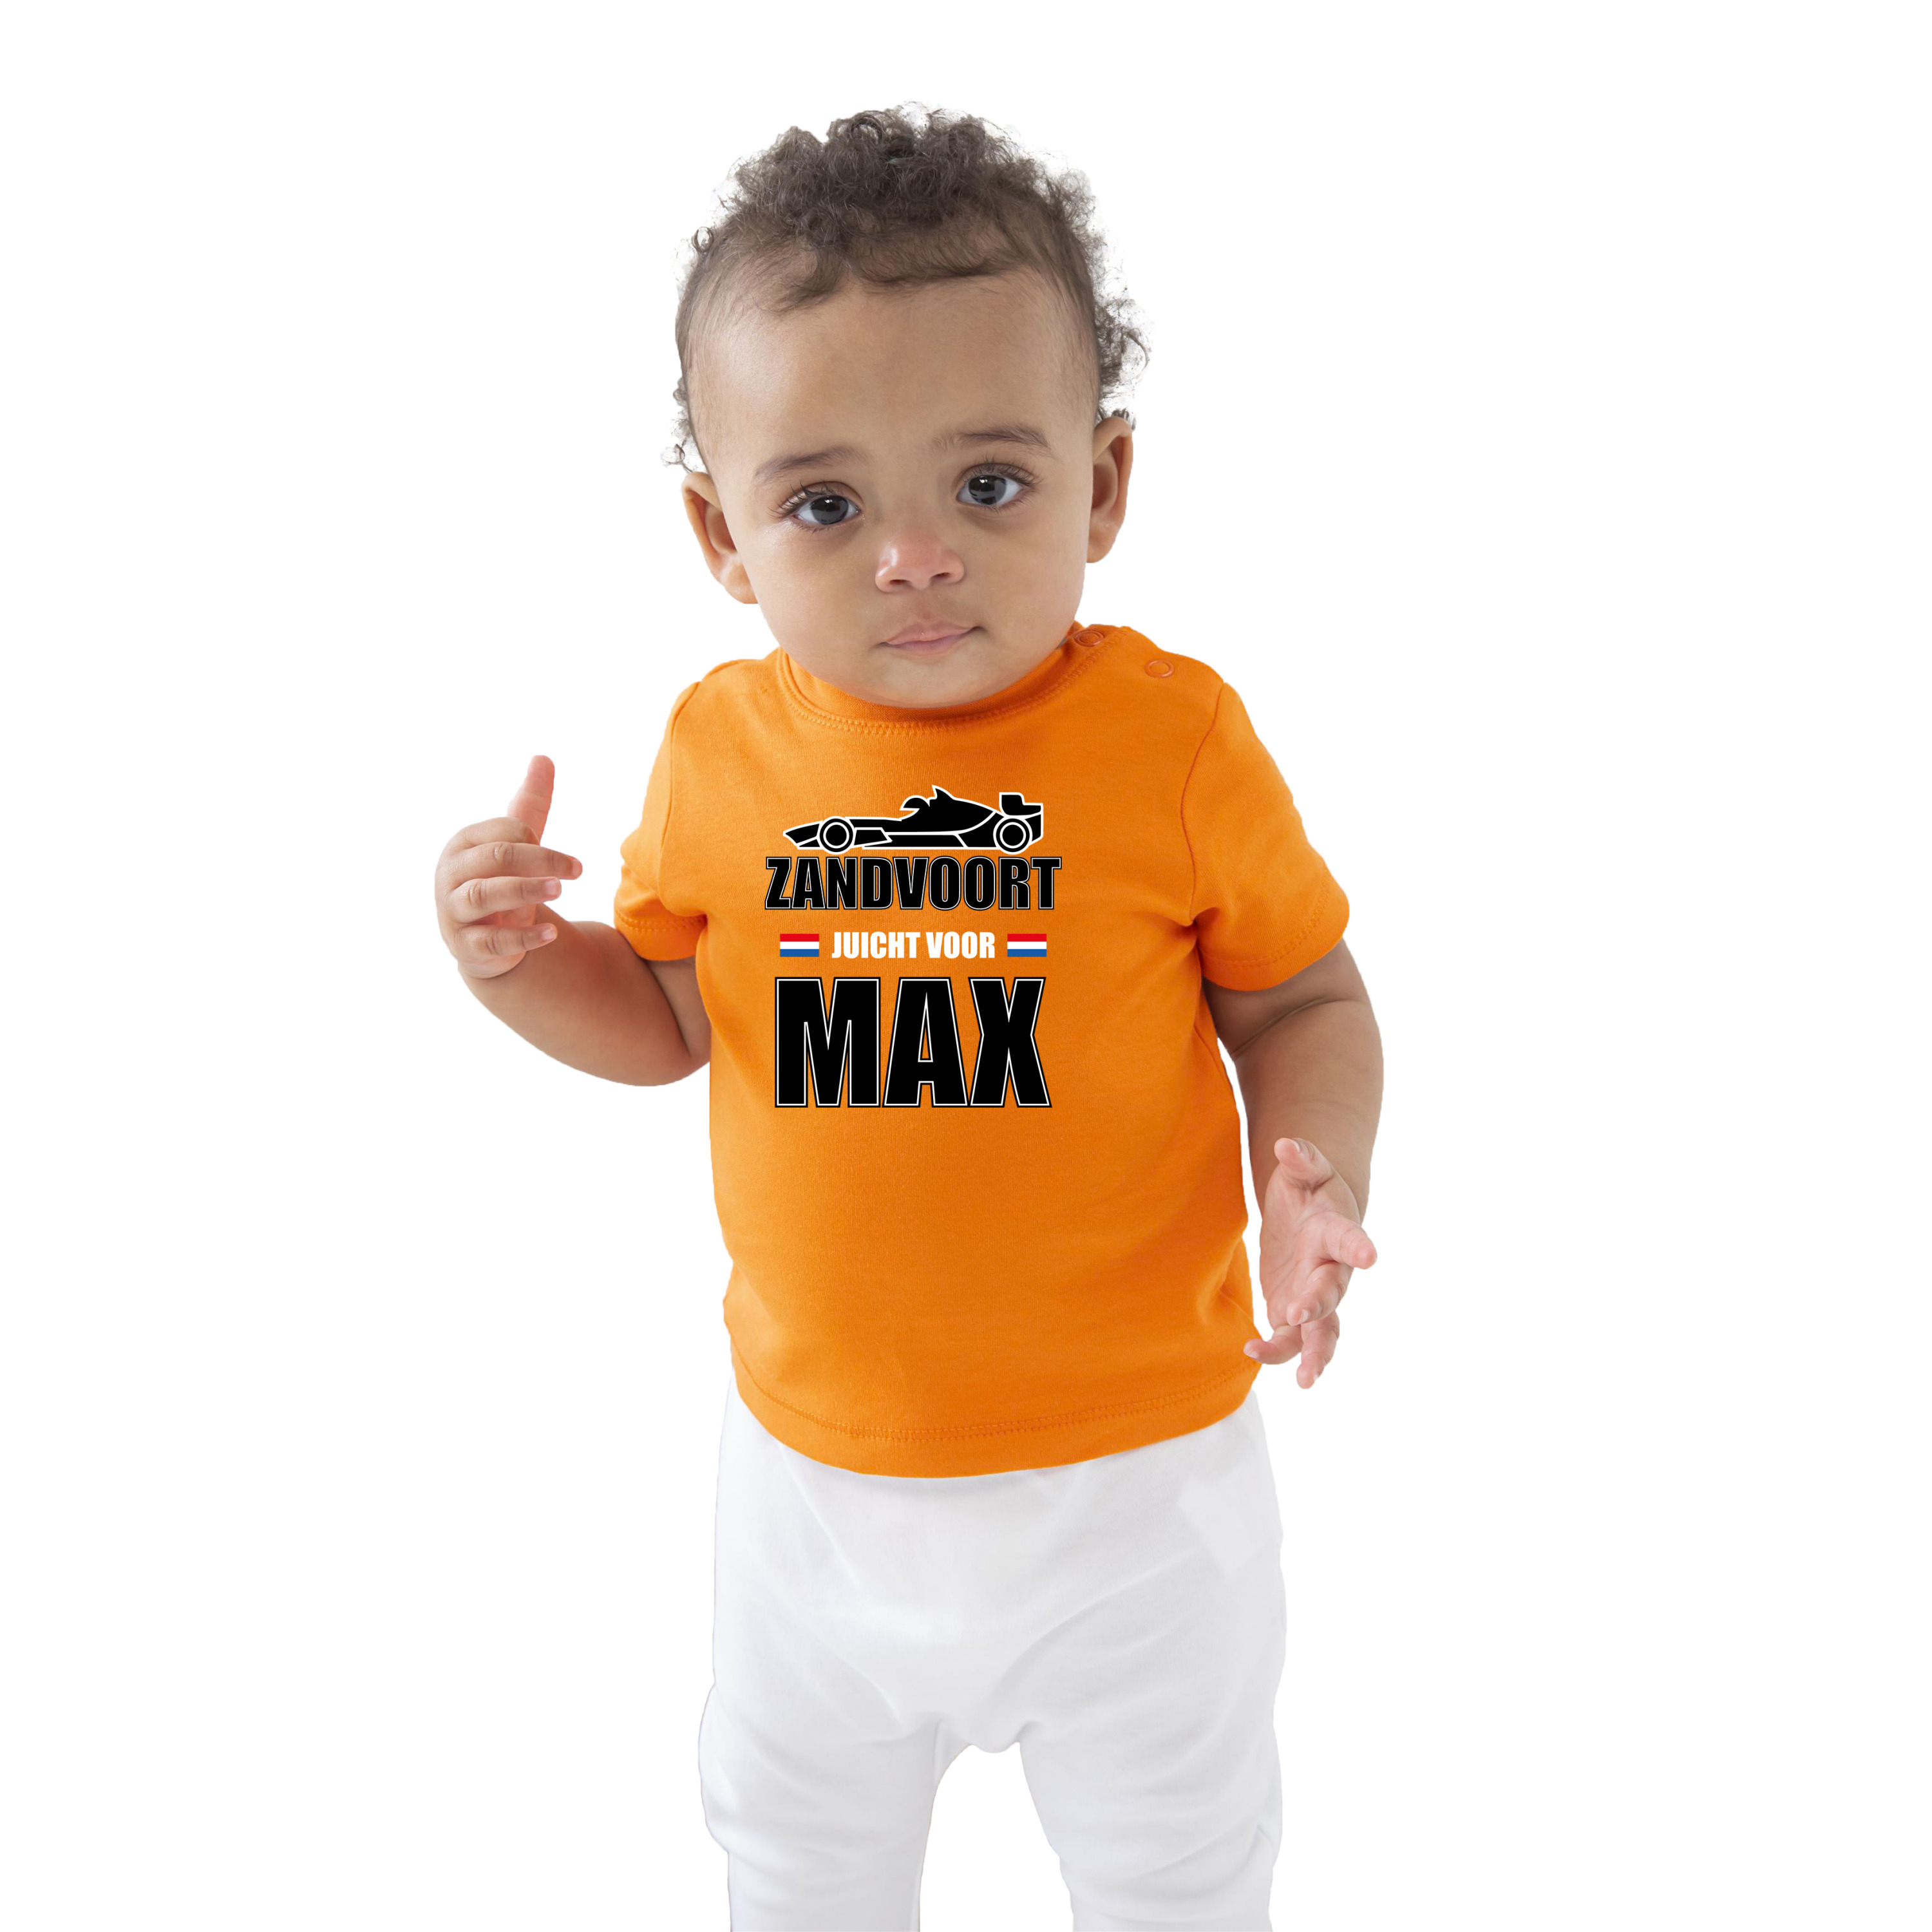 Oranje t-shirt Zandvoort juicht voor Max met race auto coureur supporter -race supporter voor babys